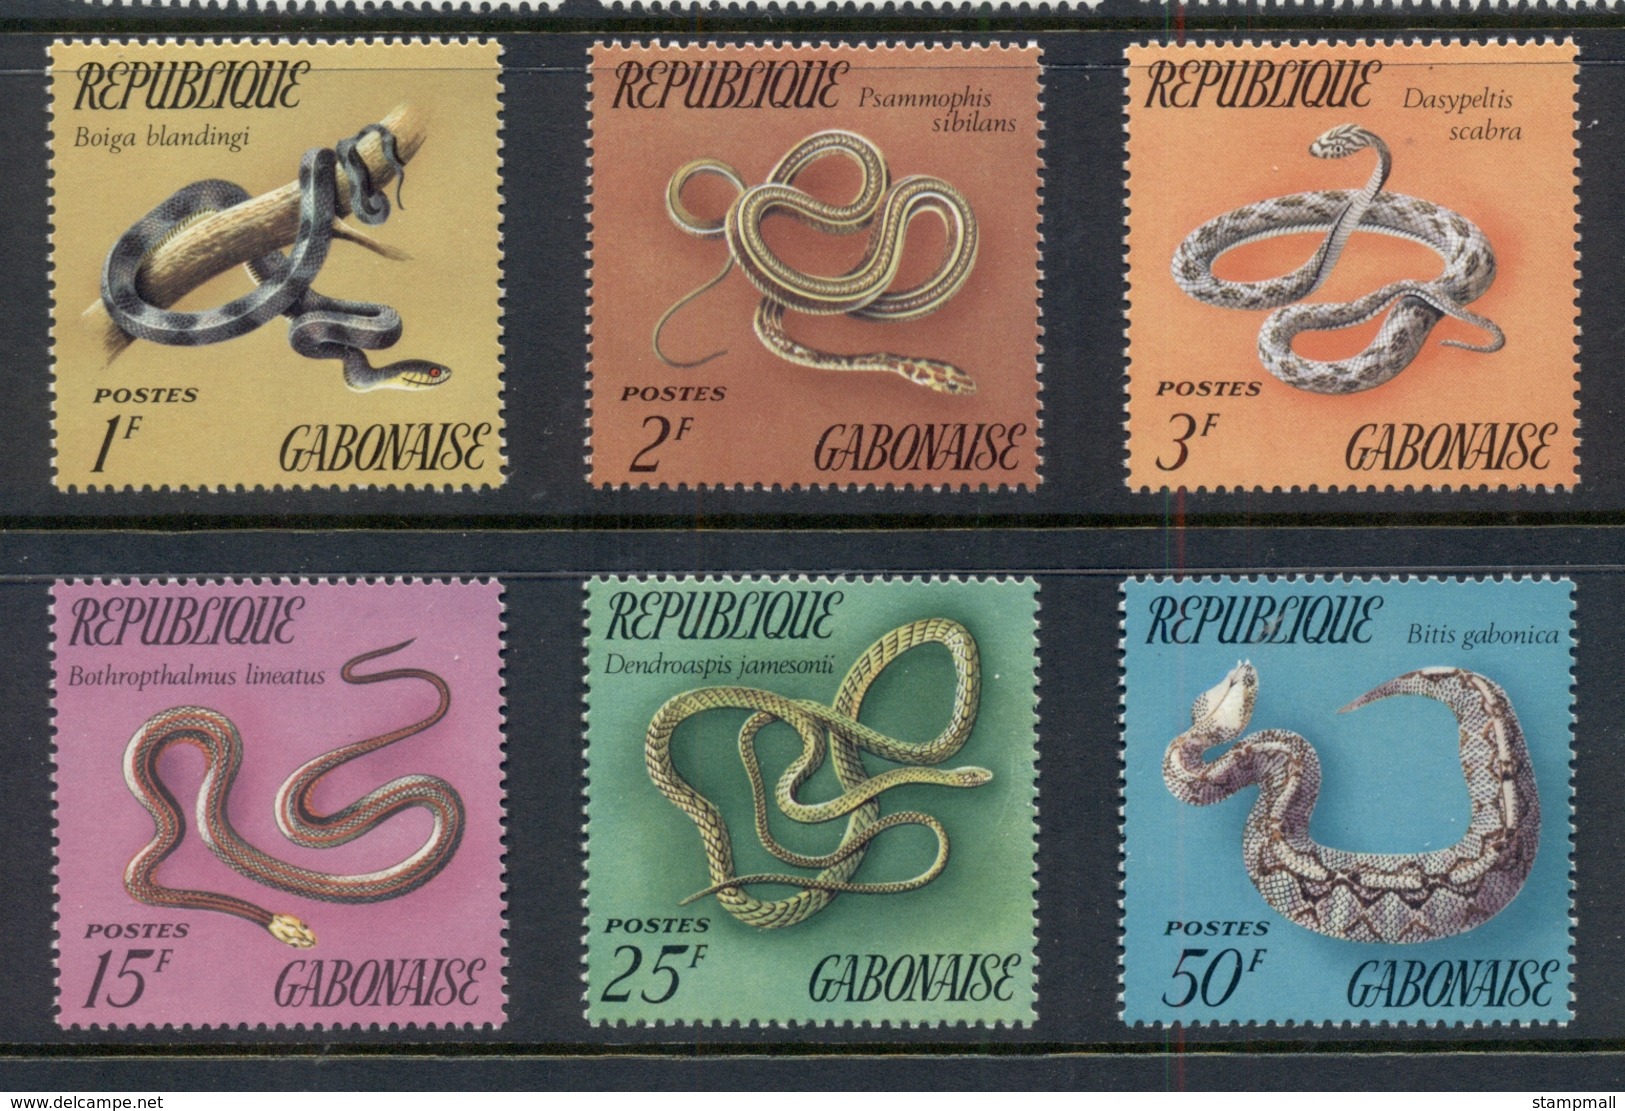 Gabon 1972 Reptiles, Snakes MUH - Gabon